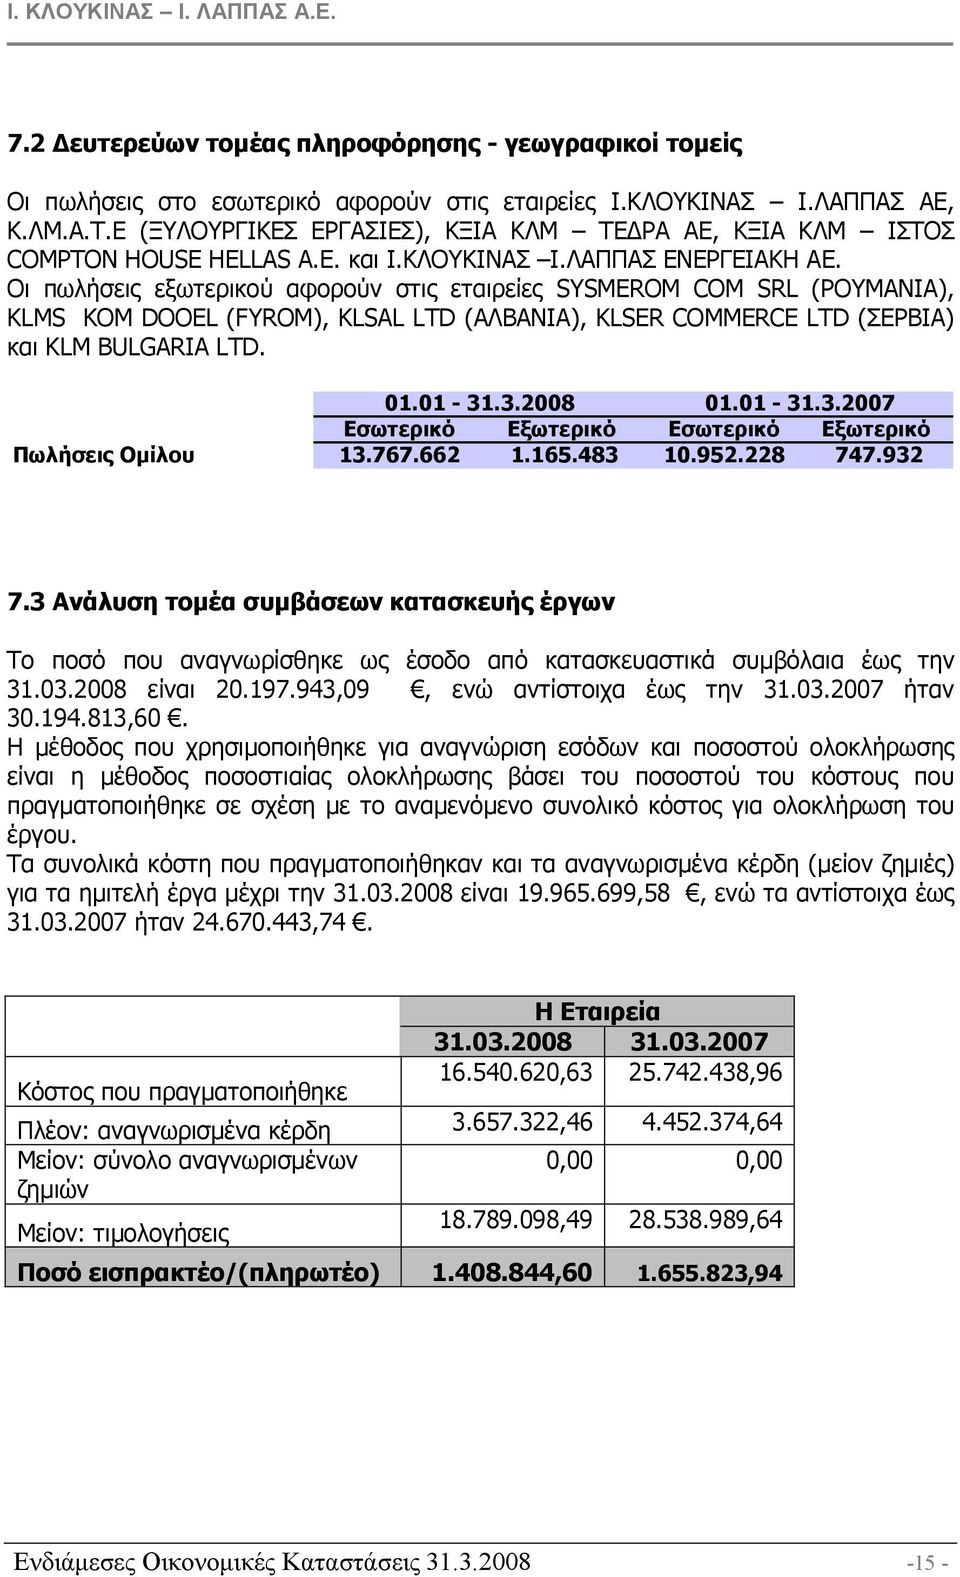 Οι πωλήσεις εξωτερικού αφορούν στις εταιρείες SYSMEROM COM SRL (ΡΟΥΜΑΝΙΑ), KLMS KOM DOOEL (FYROM), KLSAL LTD (ΑΛΒΑΝΙΑ), KLSER COMMERCE LTD (ΣΕΡΒΙΑ) και KLM BULGARIA LTD. 31